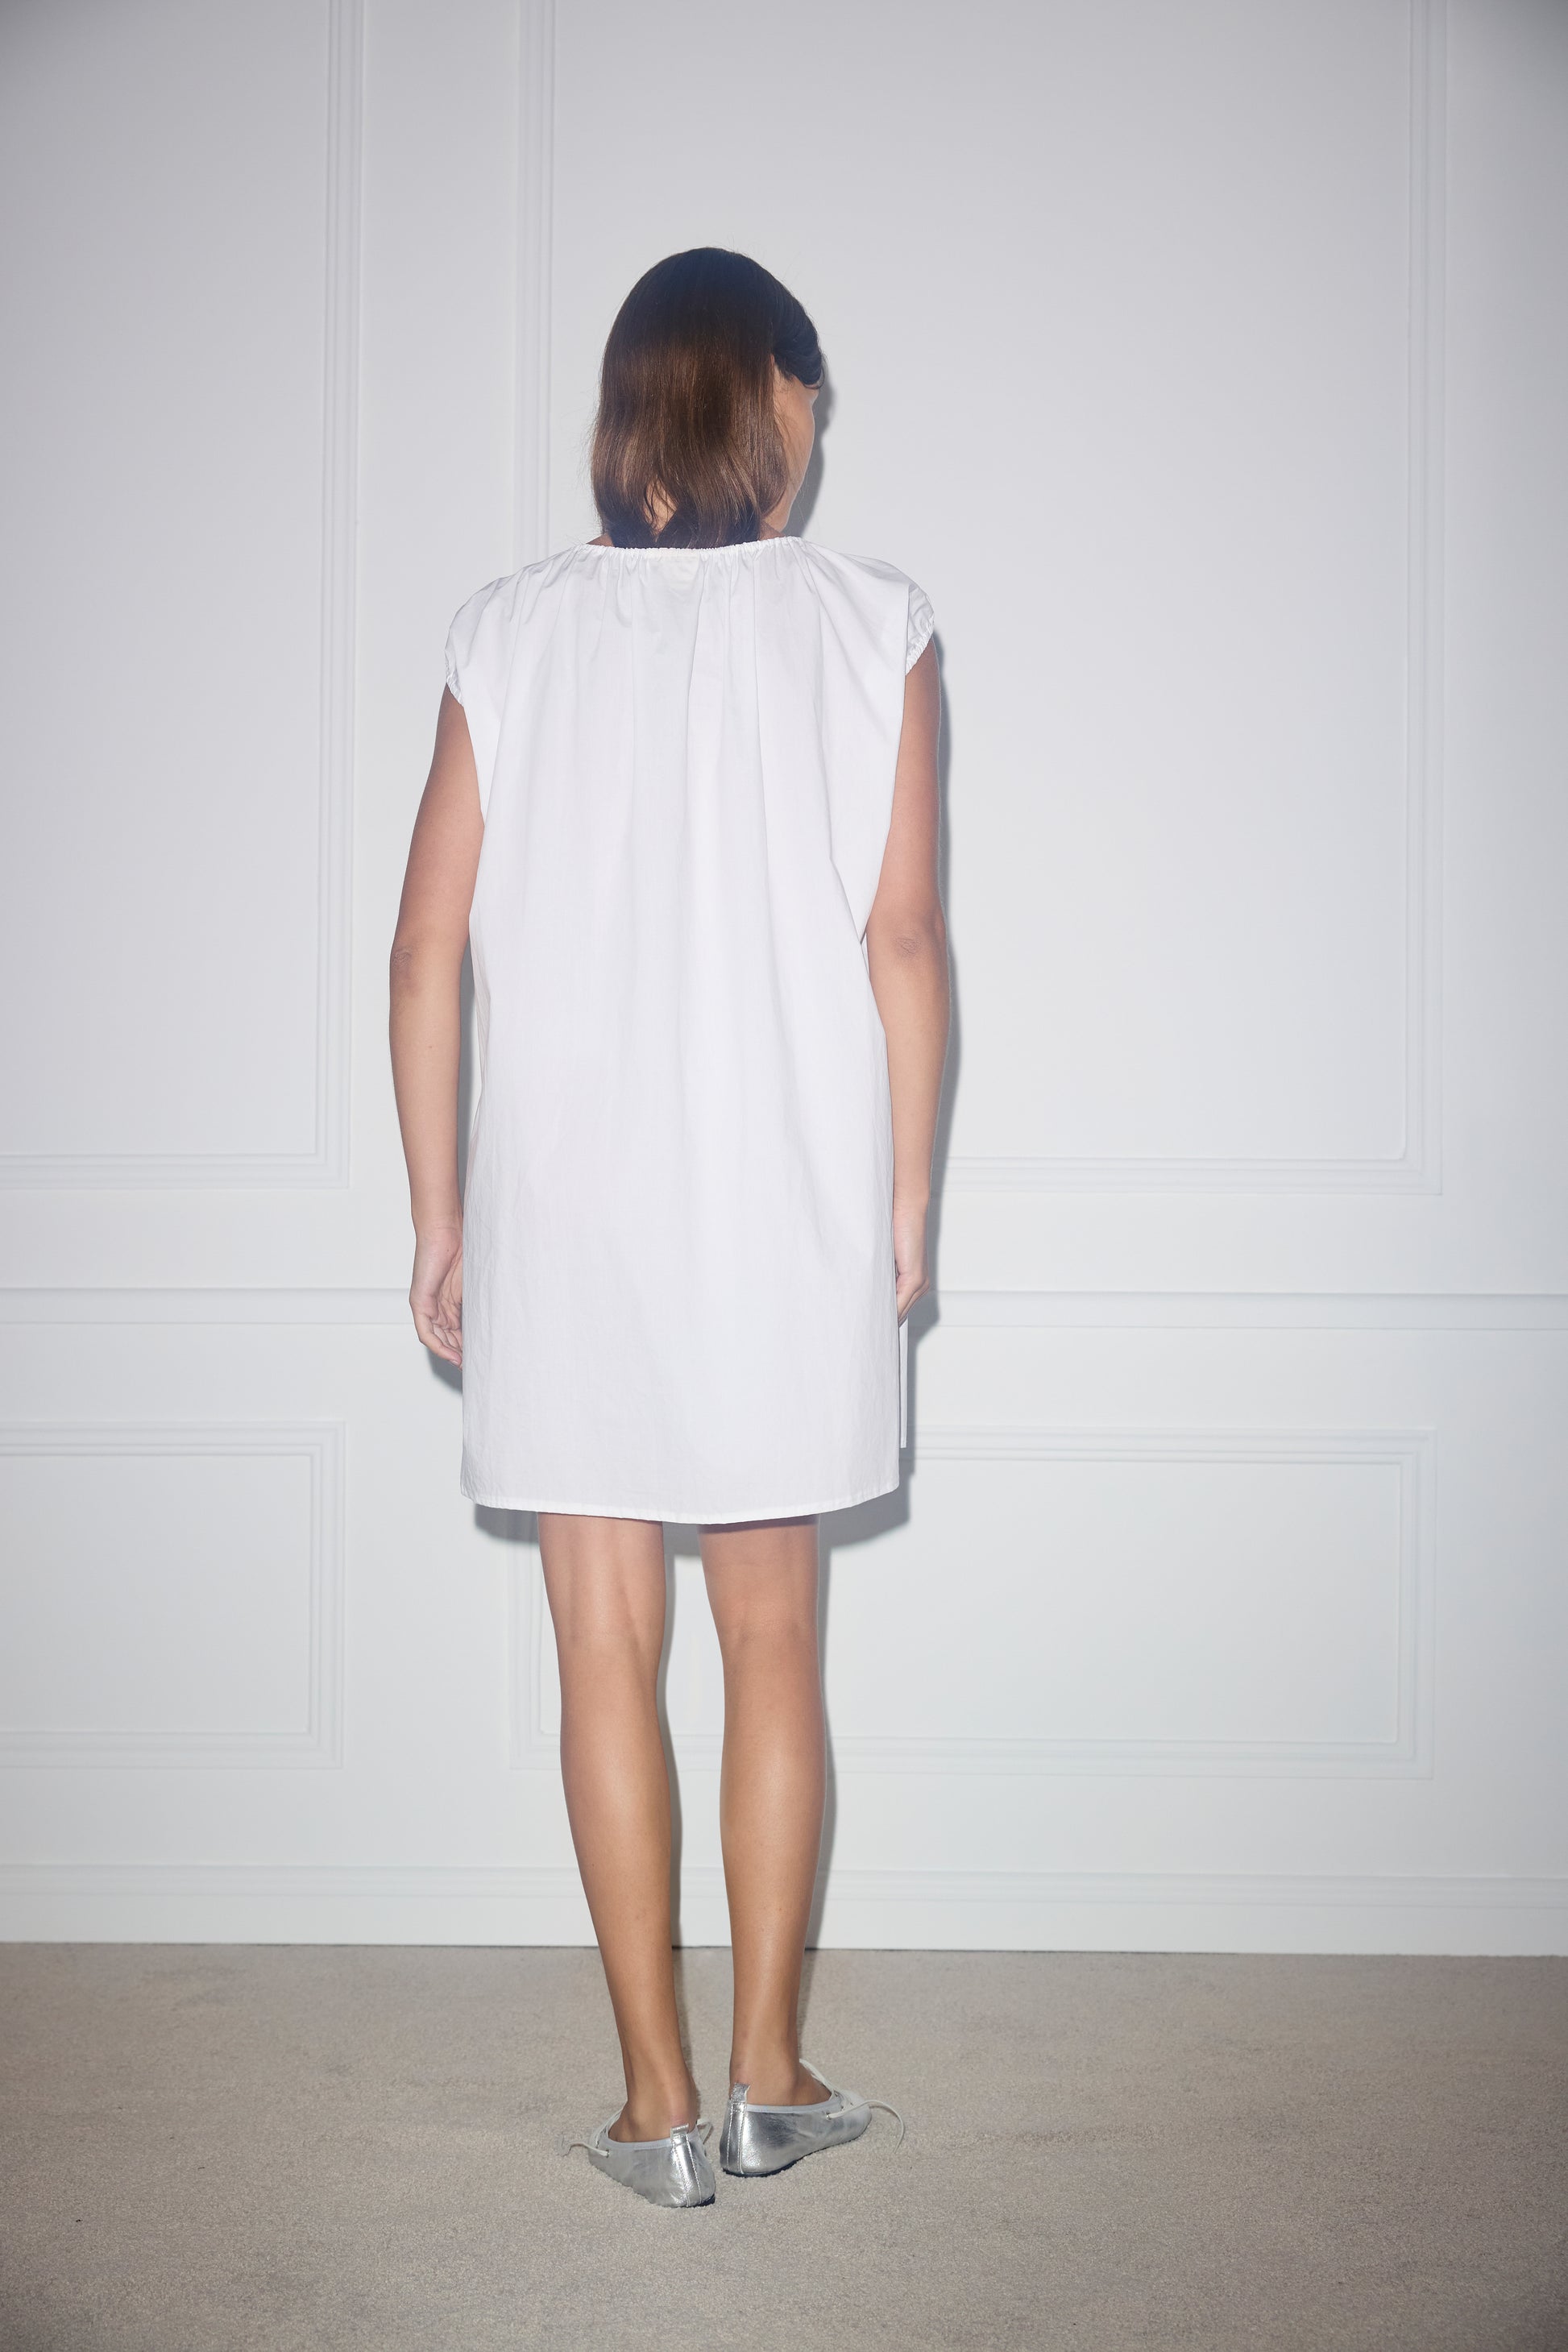 Female model wearing Capped Sleeve Dress - White by Deiji Studios against plain background